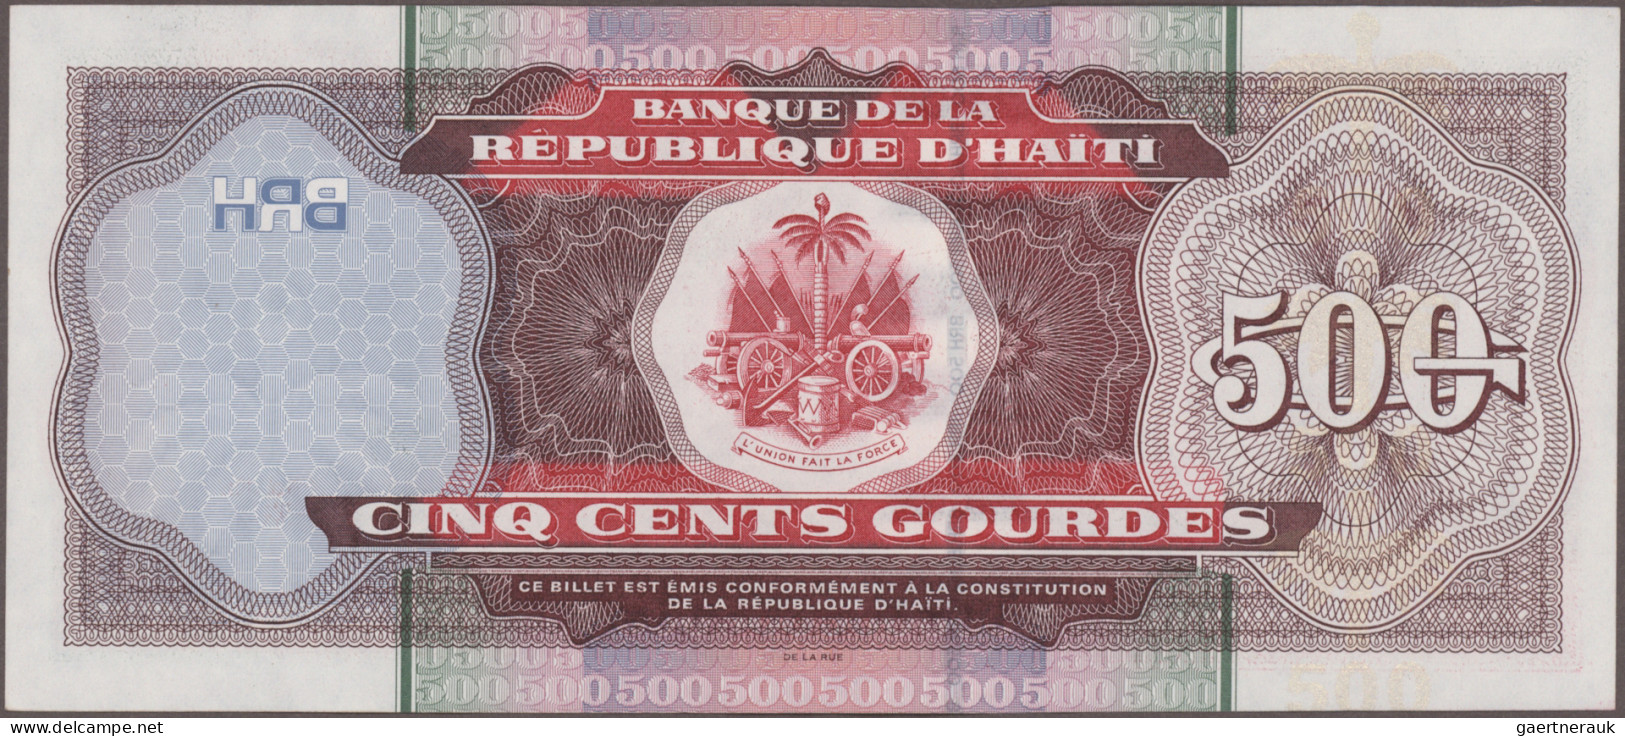 Haiti: Banque De La République D'Haïti, Huge Lot With 27 Banknotes, Series 1984- - Haiti